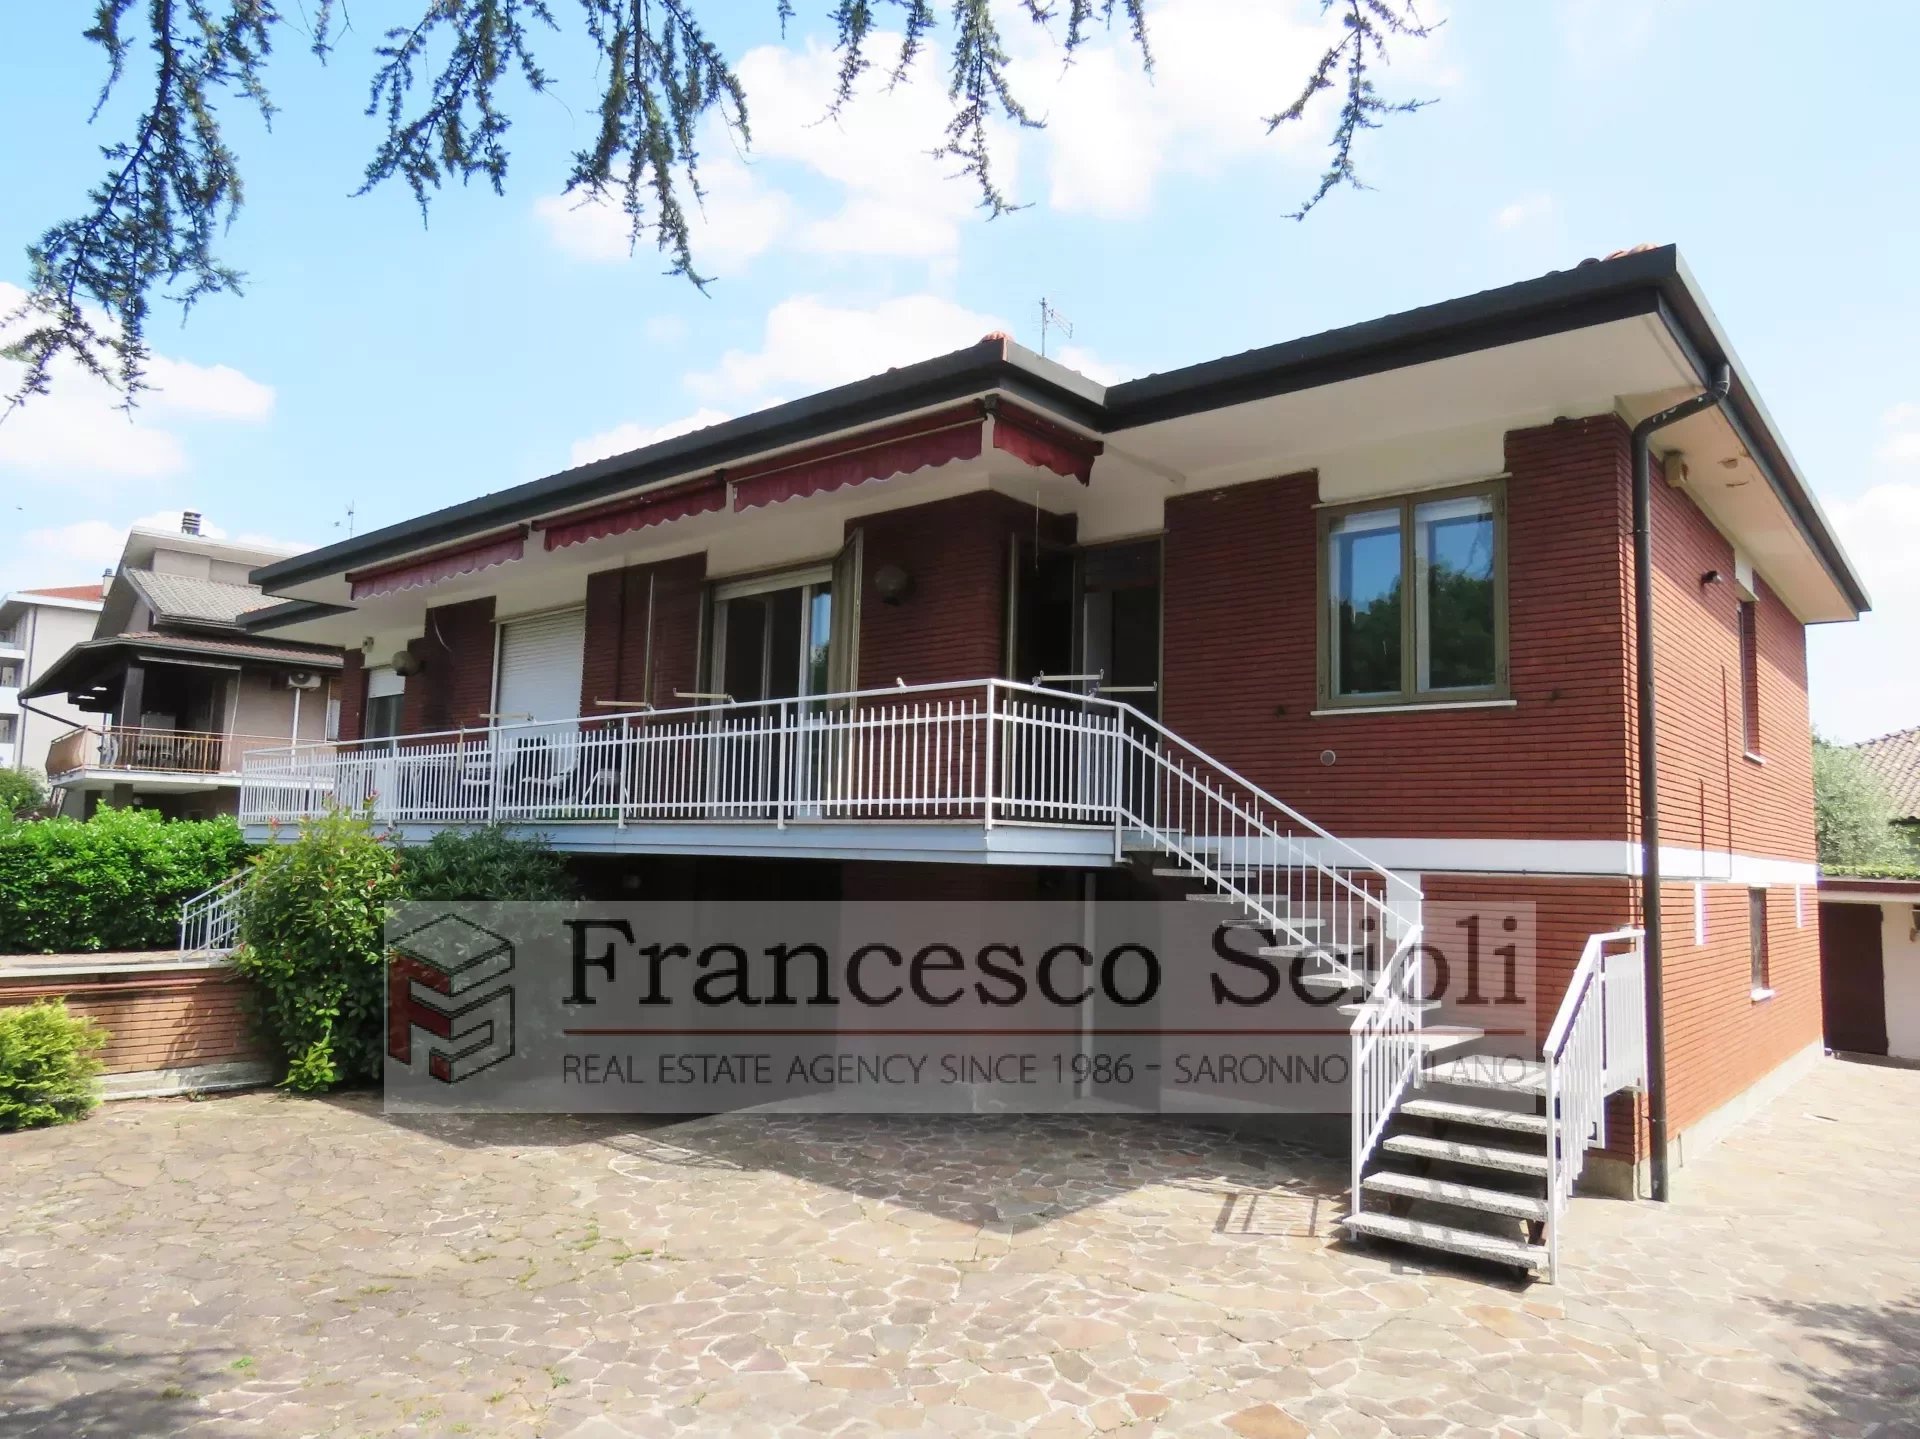 Vendita Appartamento in villa Saronno Cascina Ferrara